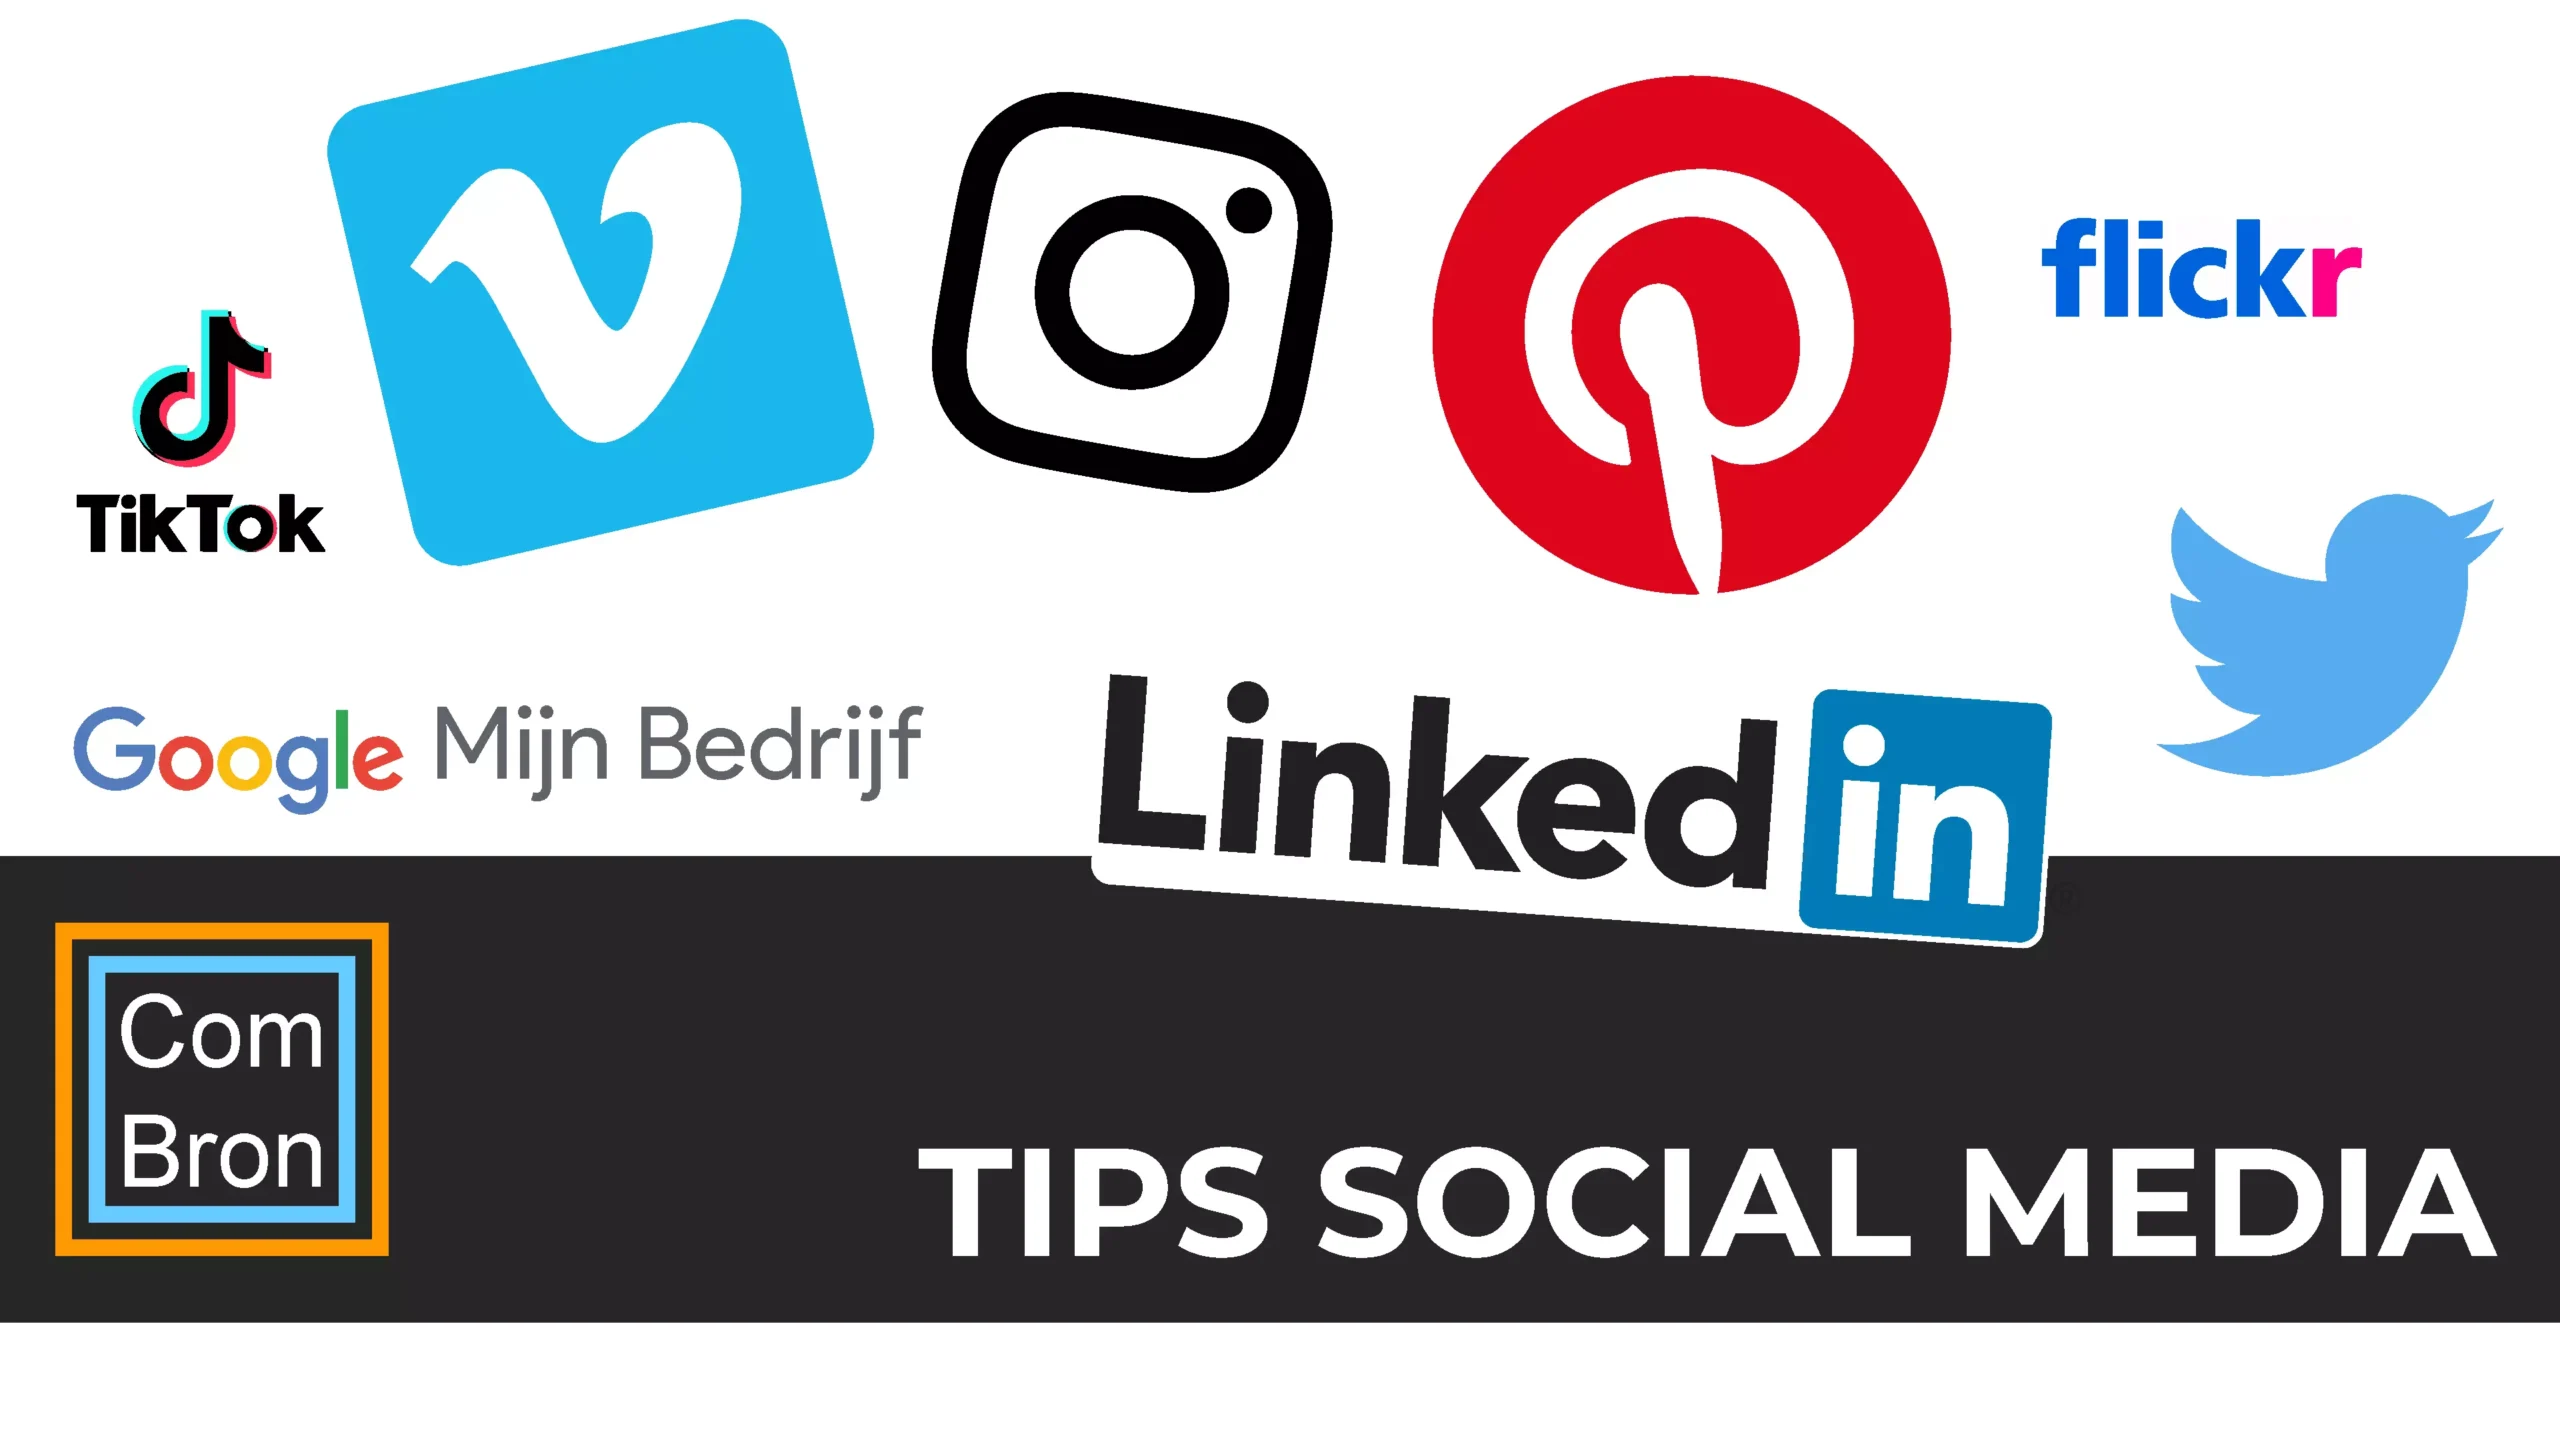 Tips social media met afbeeldingen van de logo's van Pinterest, LinkedIn, Google mijn bedrijf, Twitter, Instagram, TikTok en Vimeo.